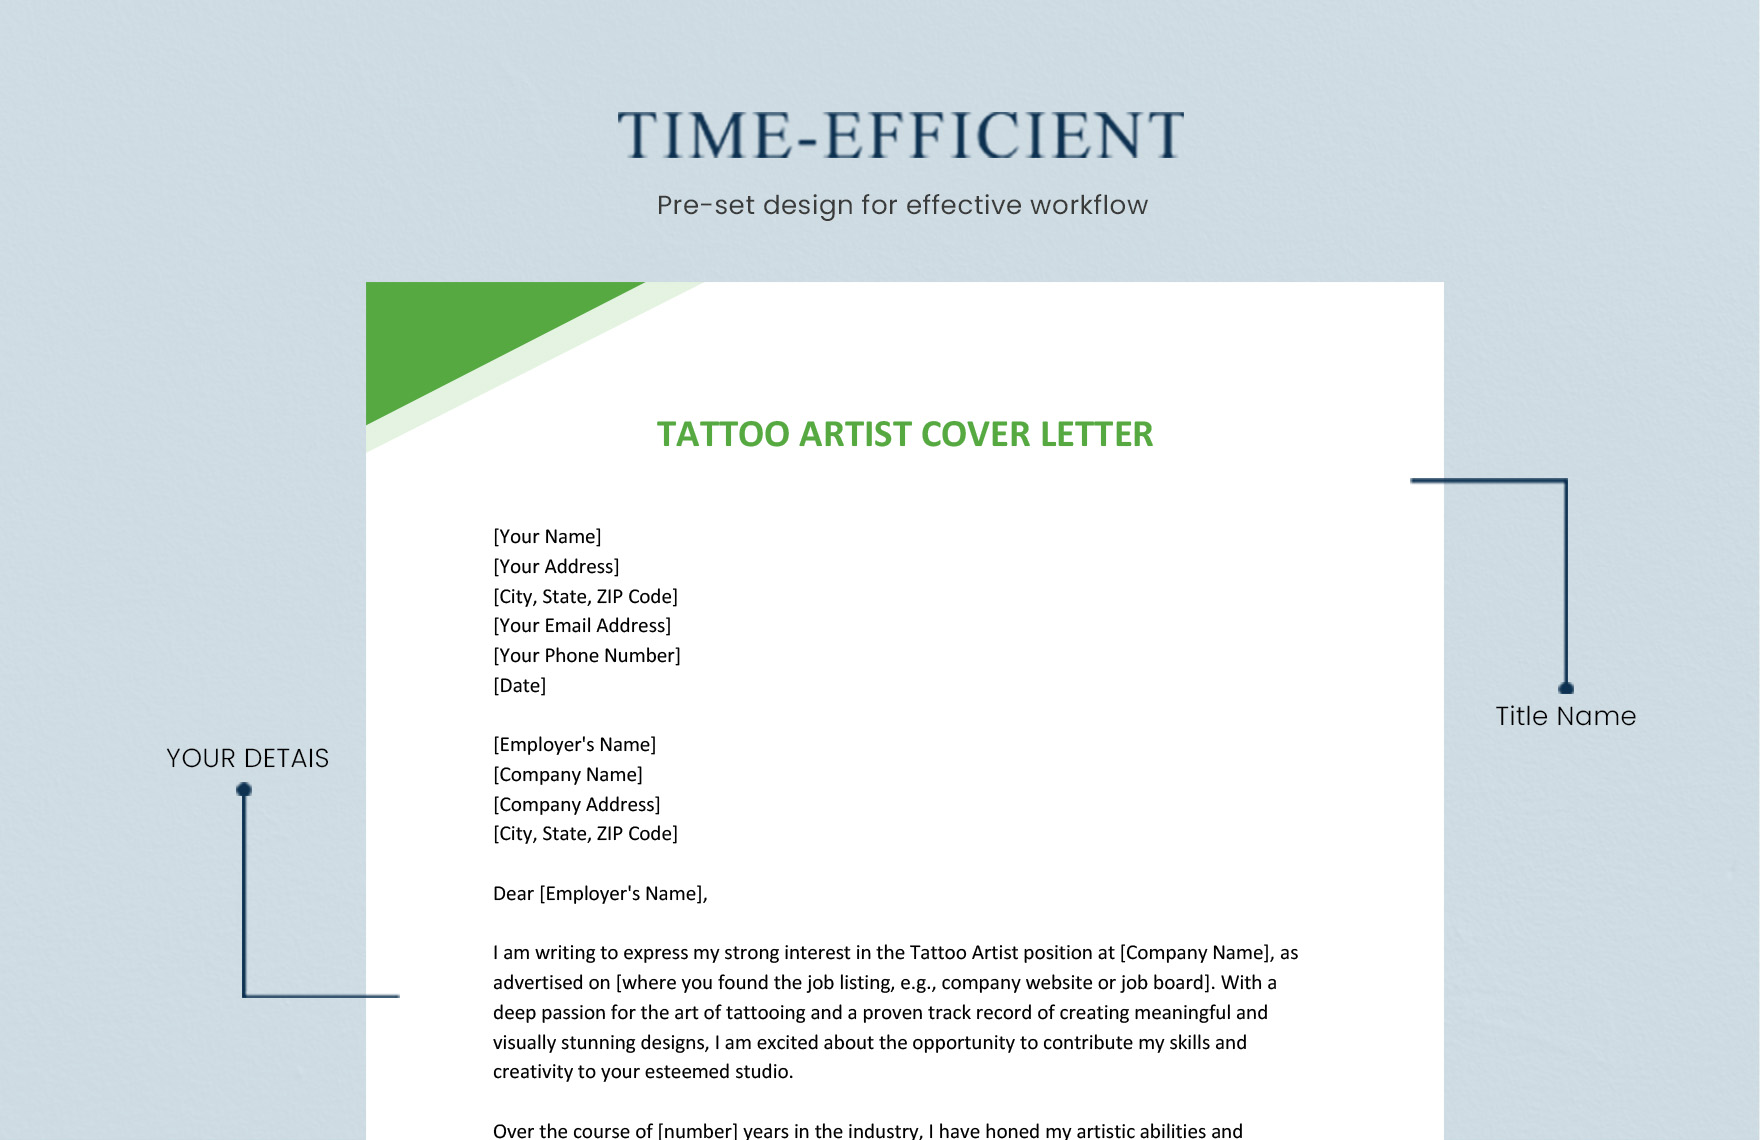 Tattoo Artist Cover Letter